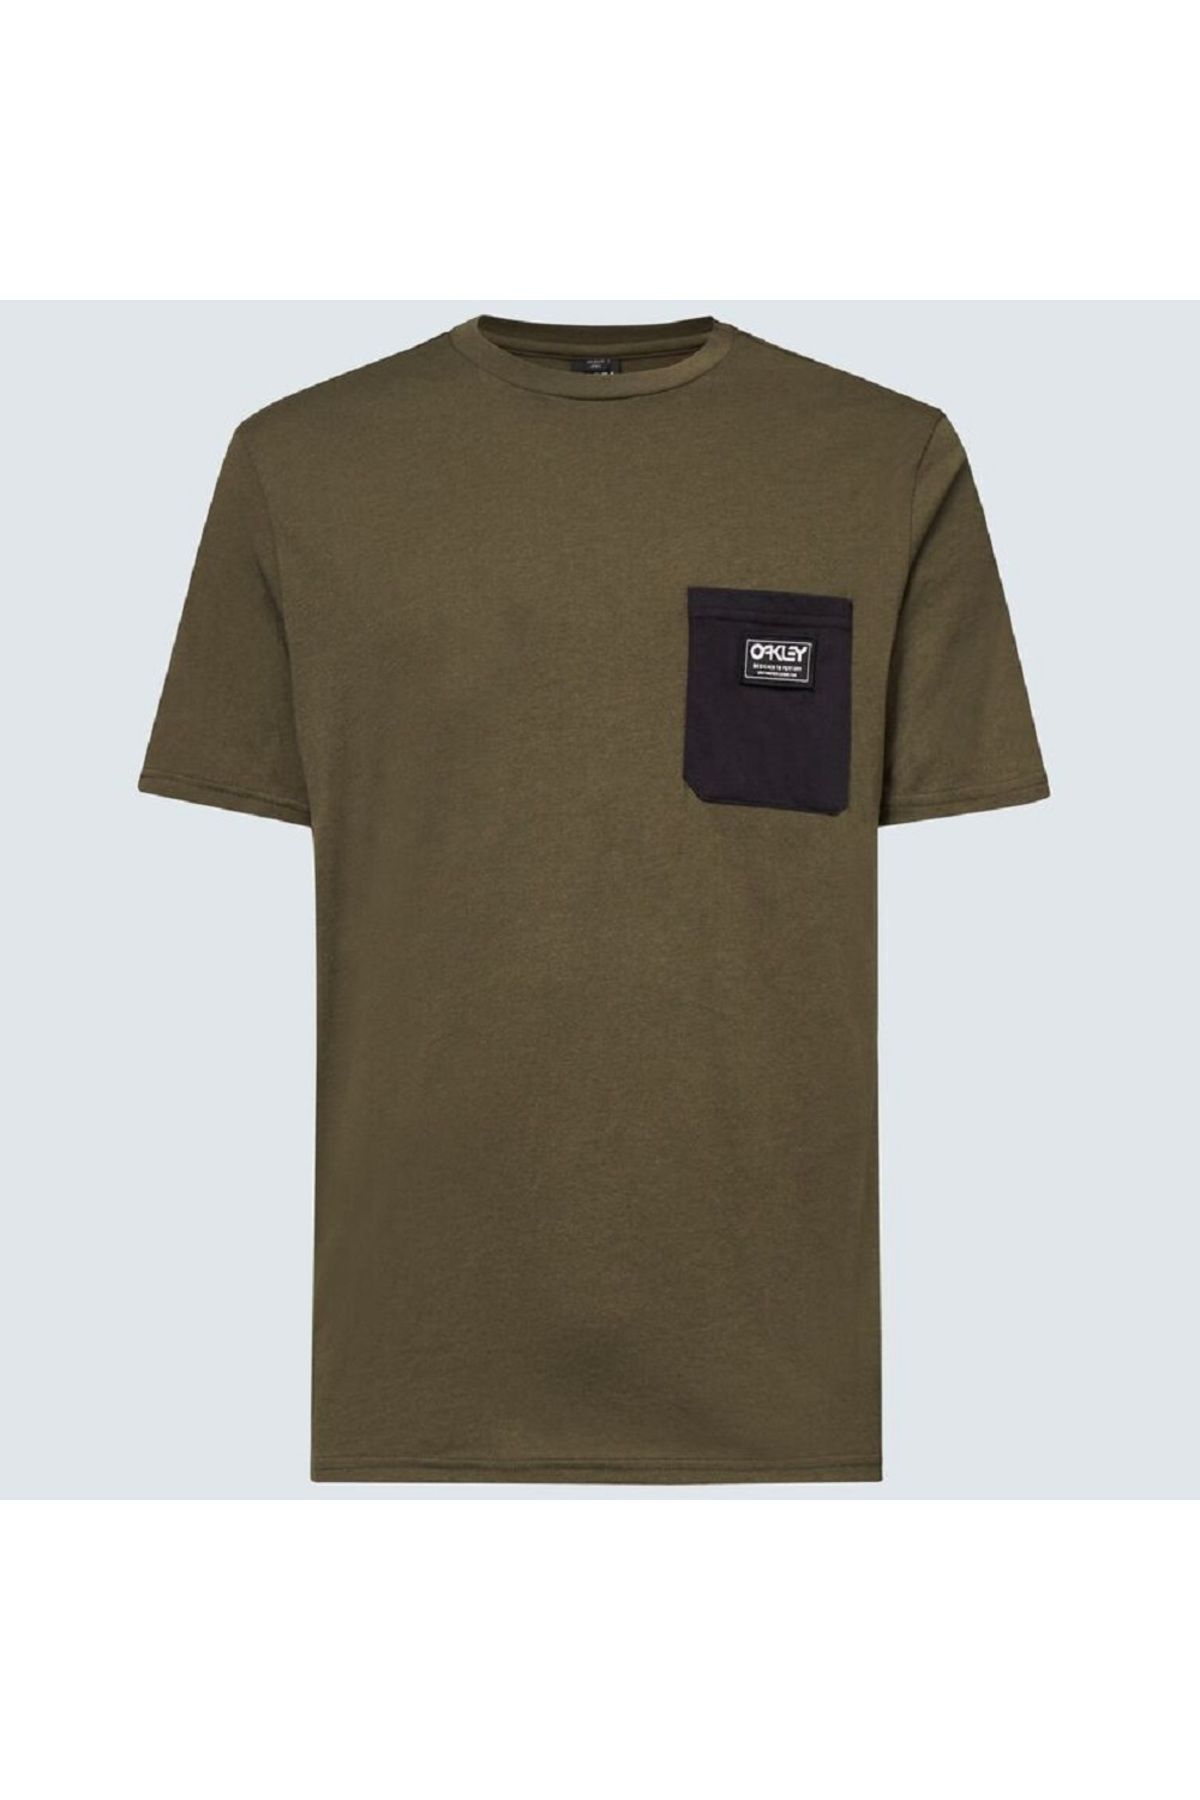 Oakley Classic B1b Pocket Unisex Kısa Kollu T-shirt